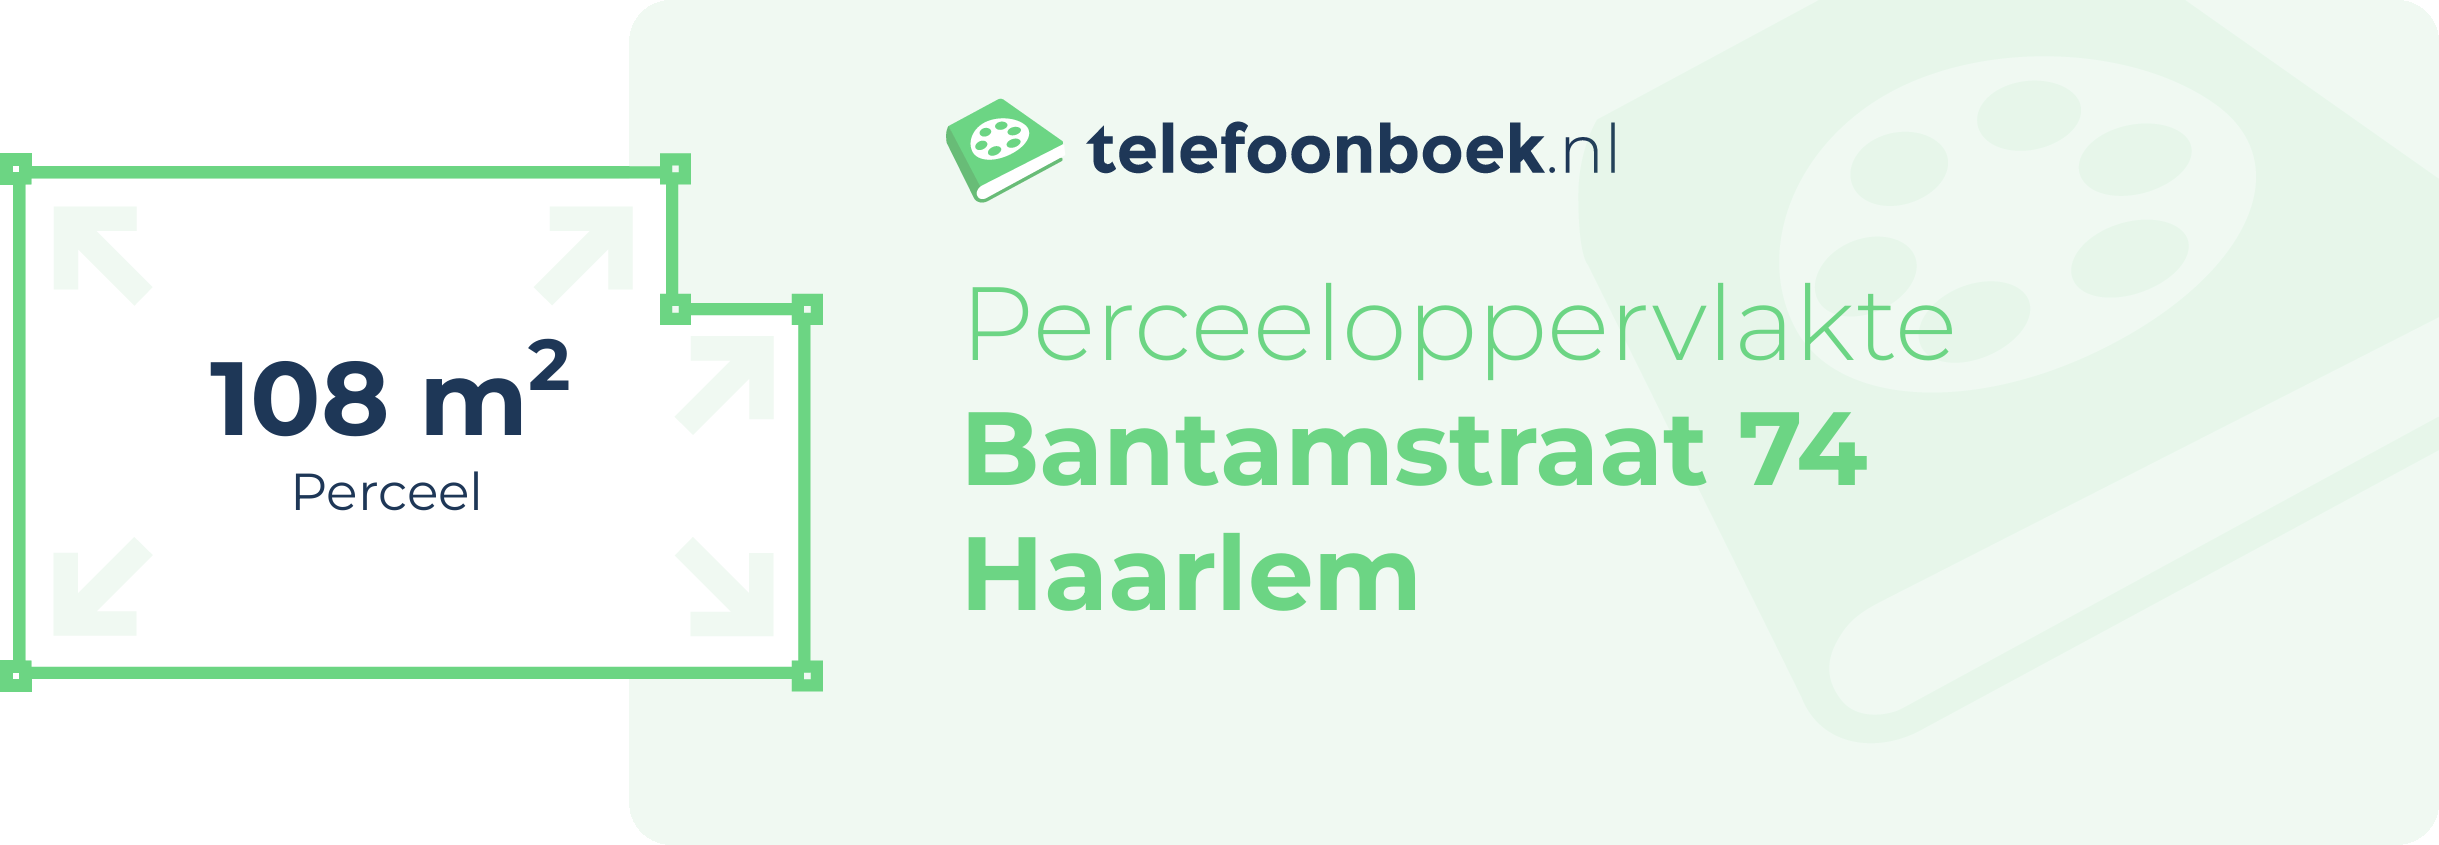 Perceeloppervlakte Bantamstraat 74 Haarlem